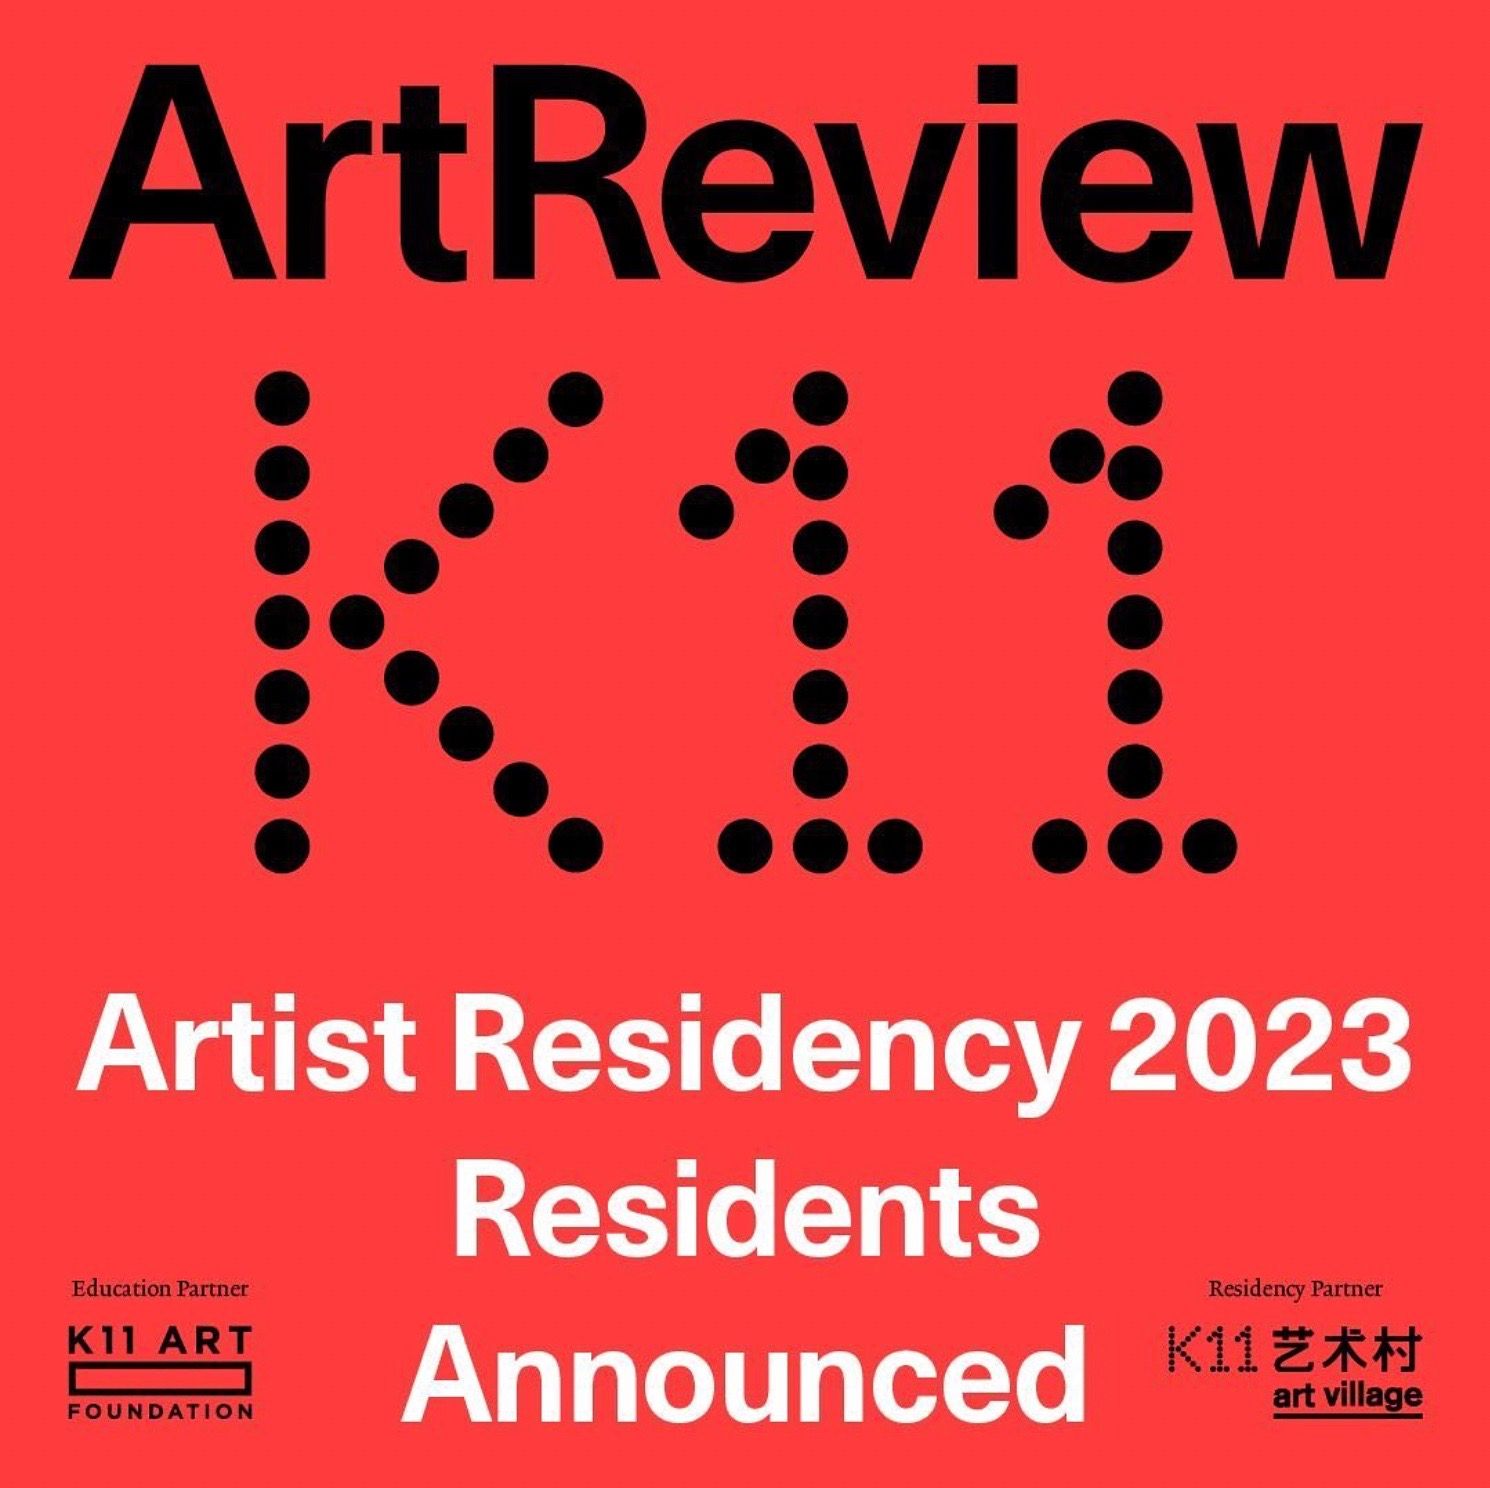 K11 Artist Residency